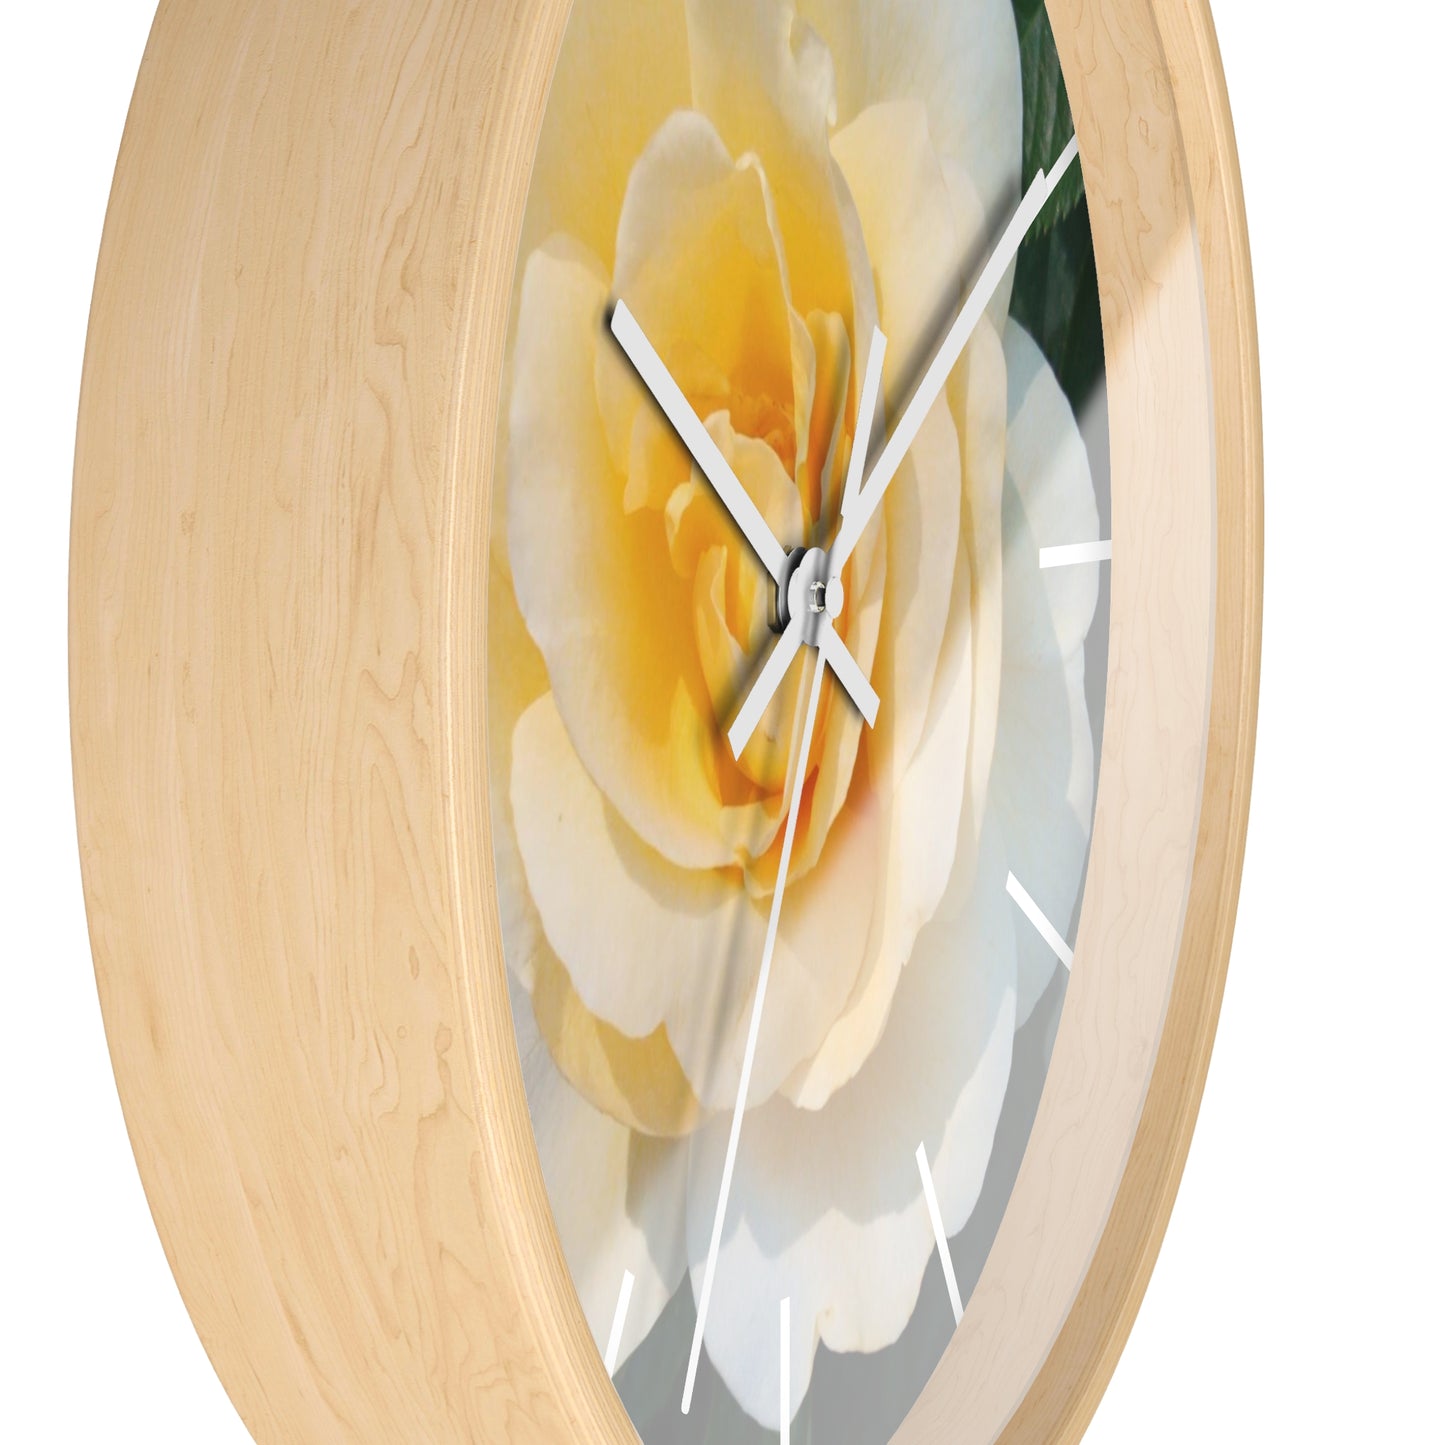 Cream Rose Wall Clock